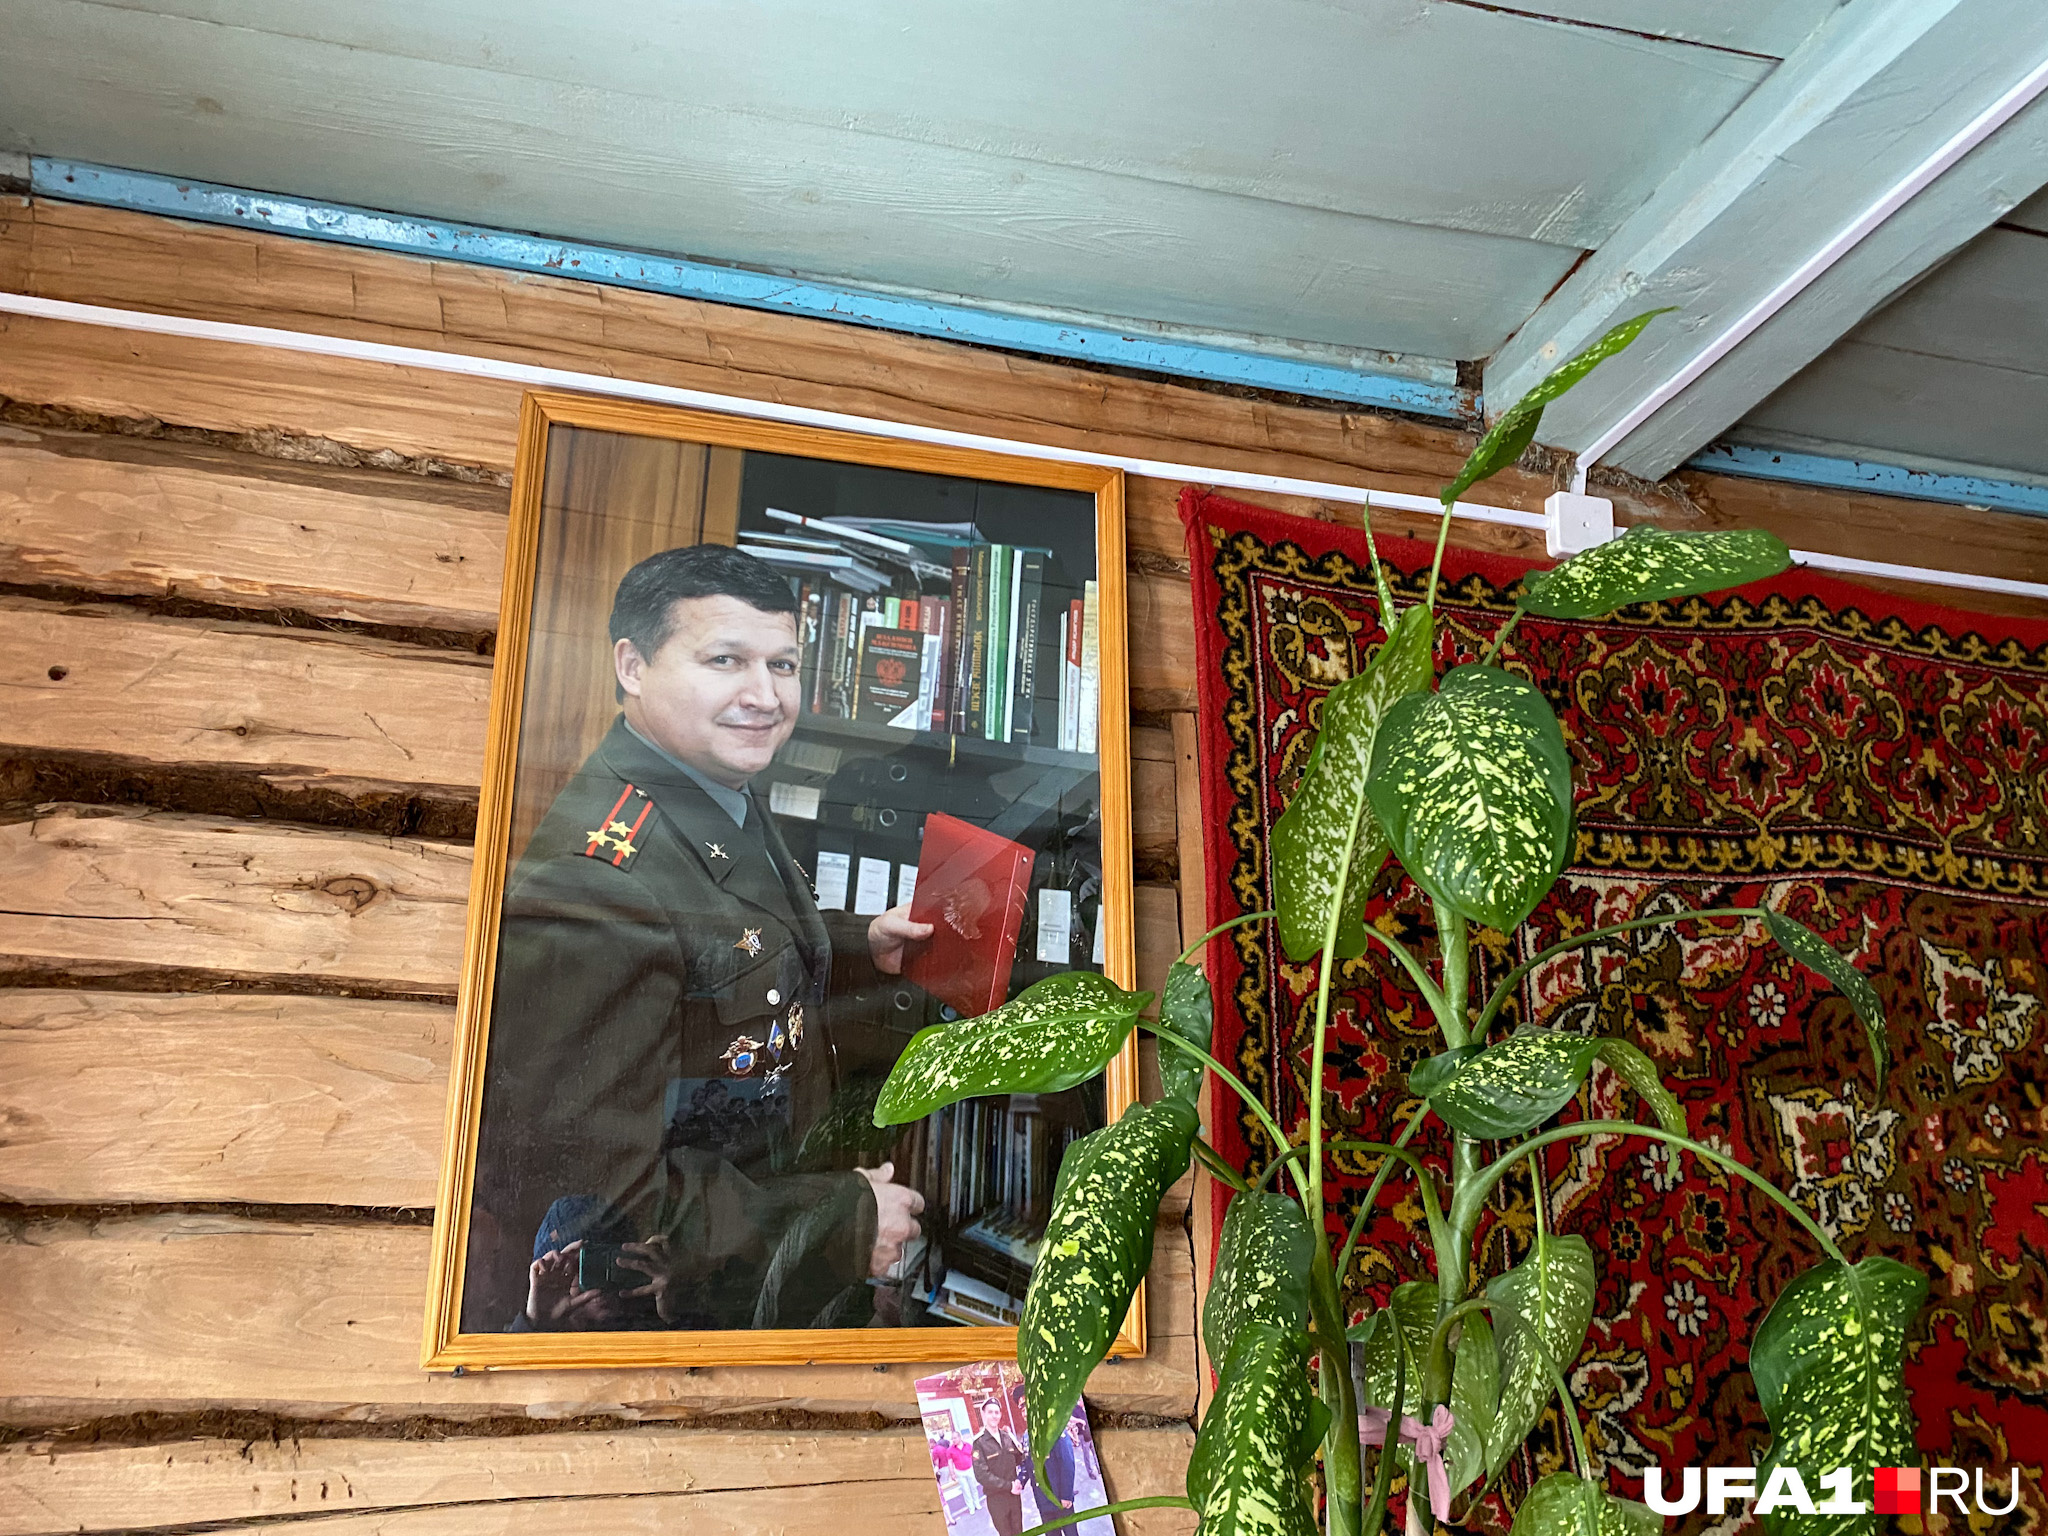 Портрет Иршата Фахритдинова висит в доме у брата